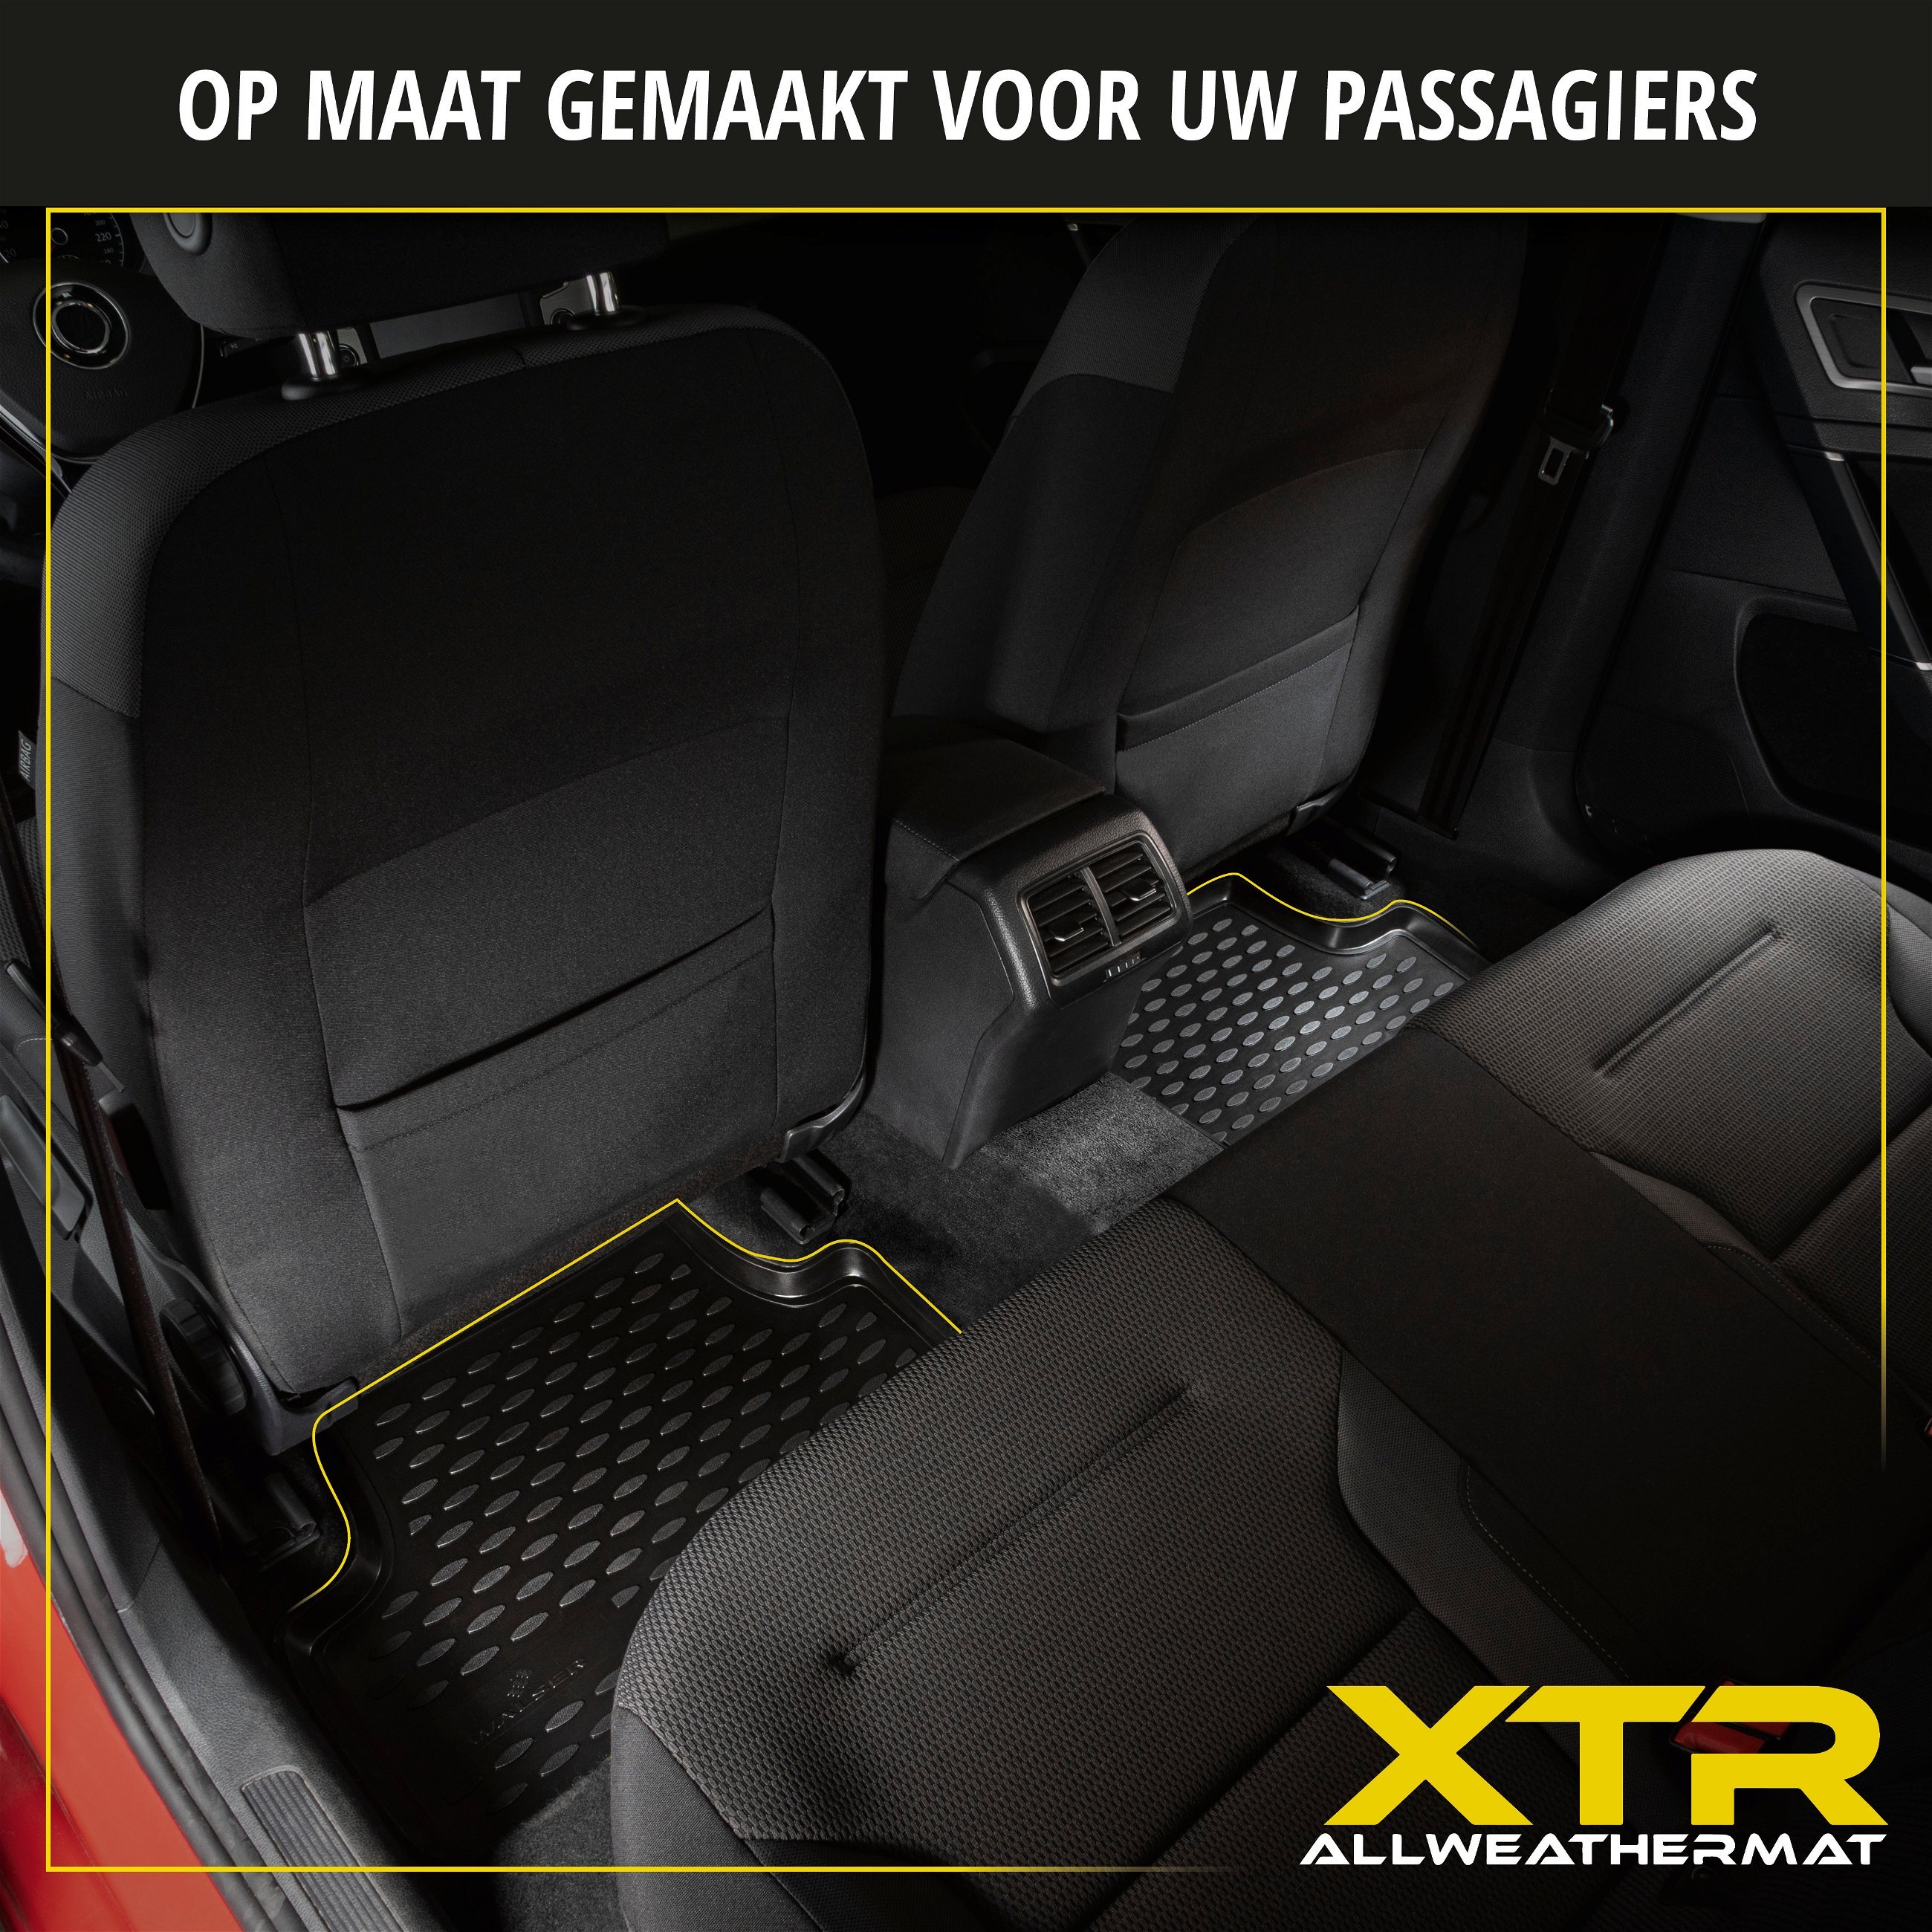 Rubberen Voetmatten XTR geschikt voor VW Transporter VI Kasten/Pritsche/Fahrgestell 04/2015-Vandaag